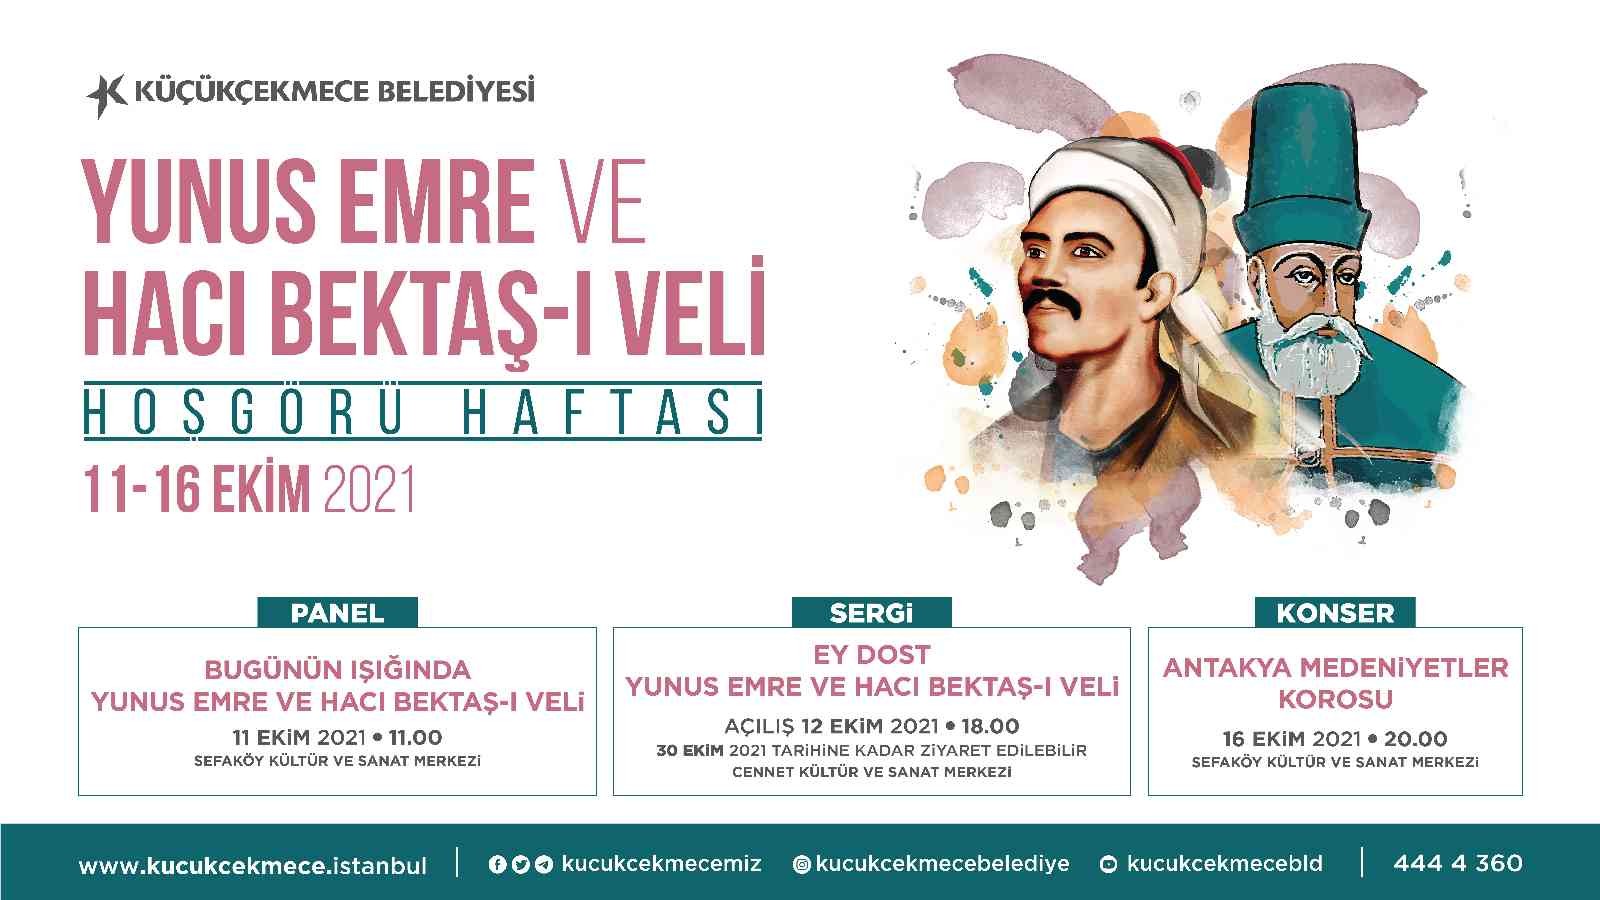 Hacı Bektaş-ı Veli ve Yunus Emre’nin ışığında hoşgörü haftası etkinlikleri Küçükçekmece’de başlıyor #istanbul